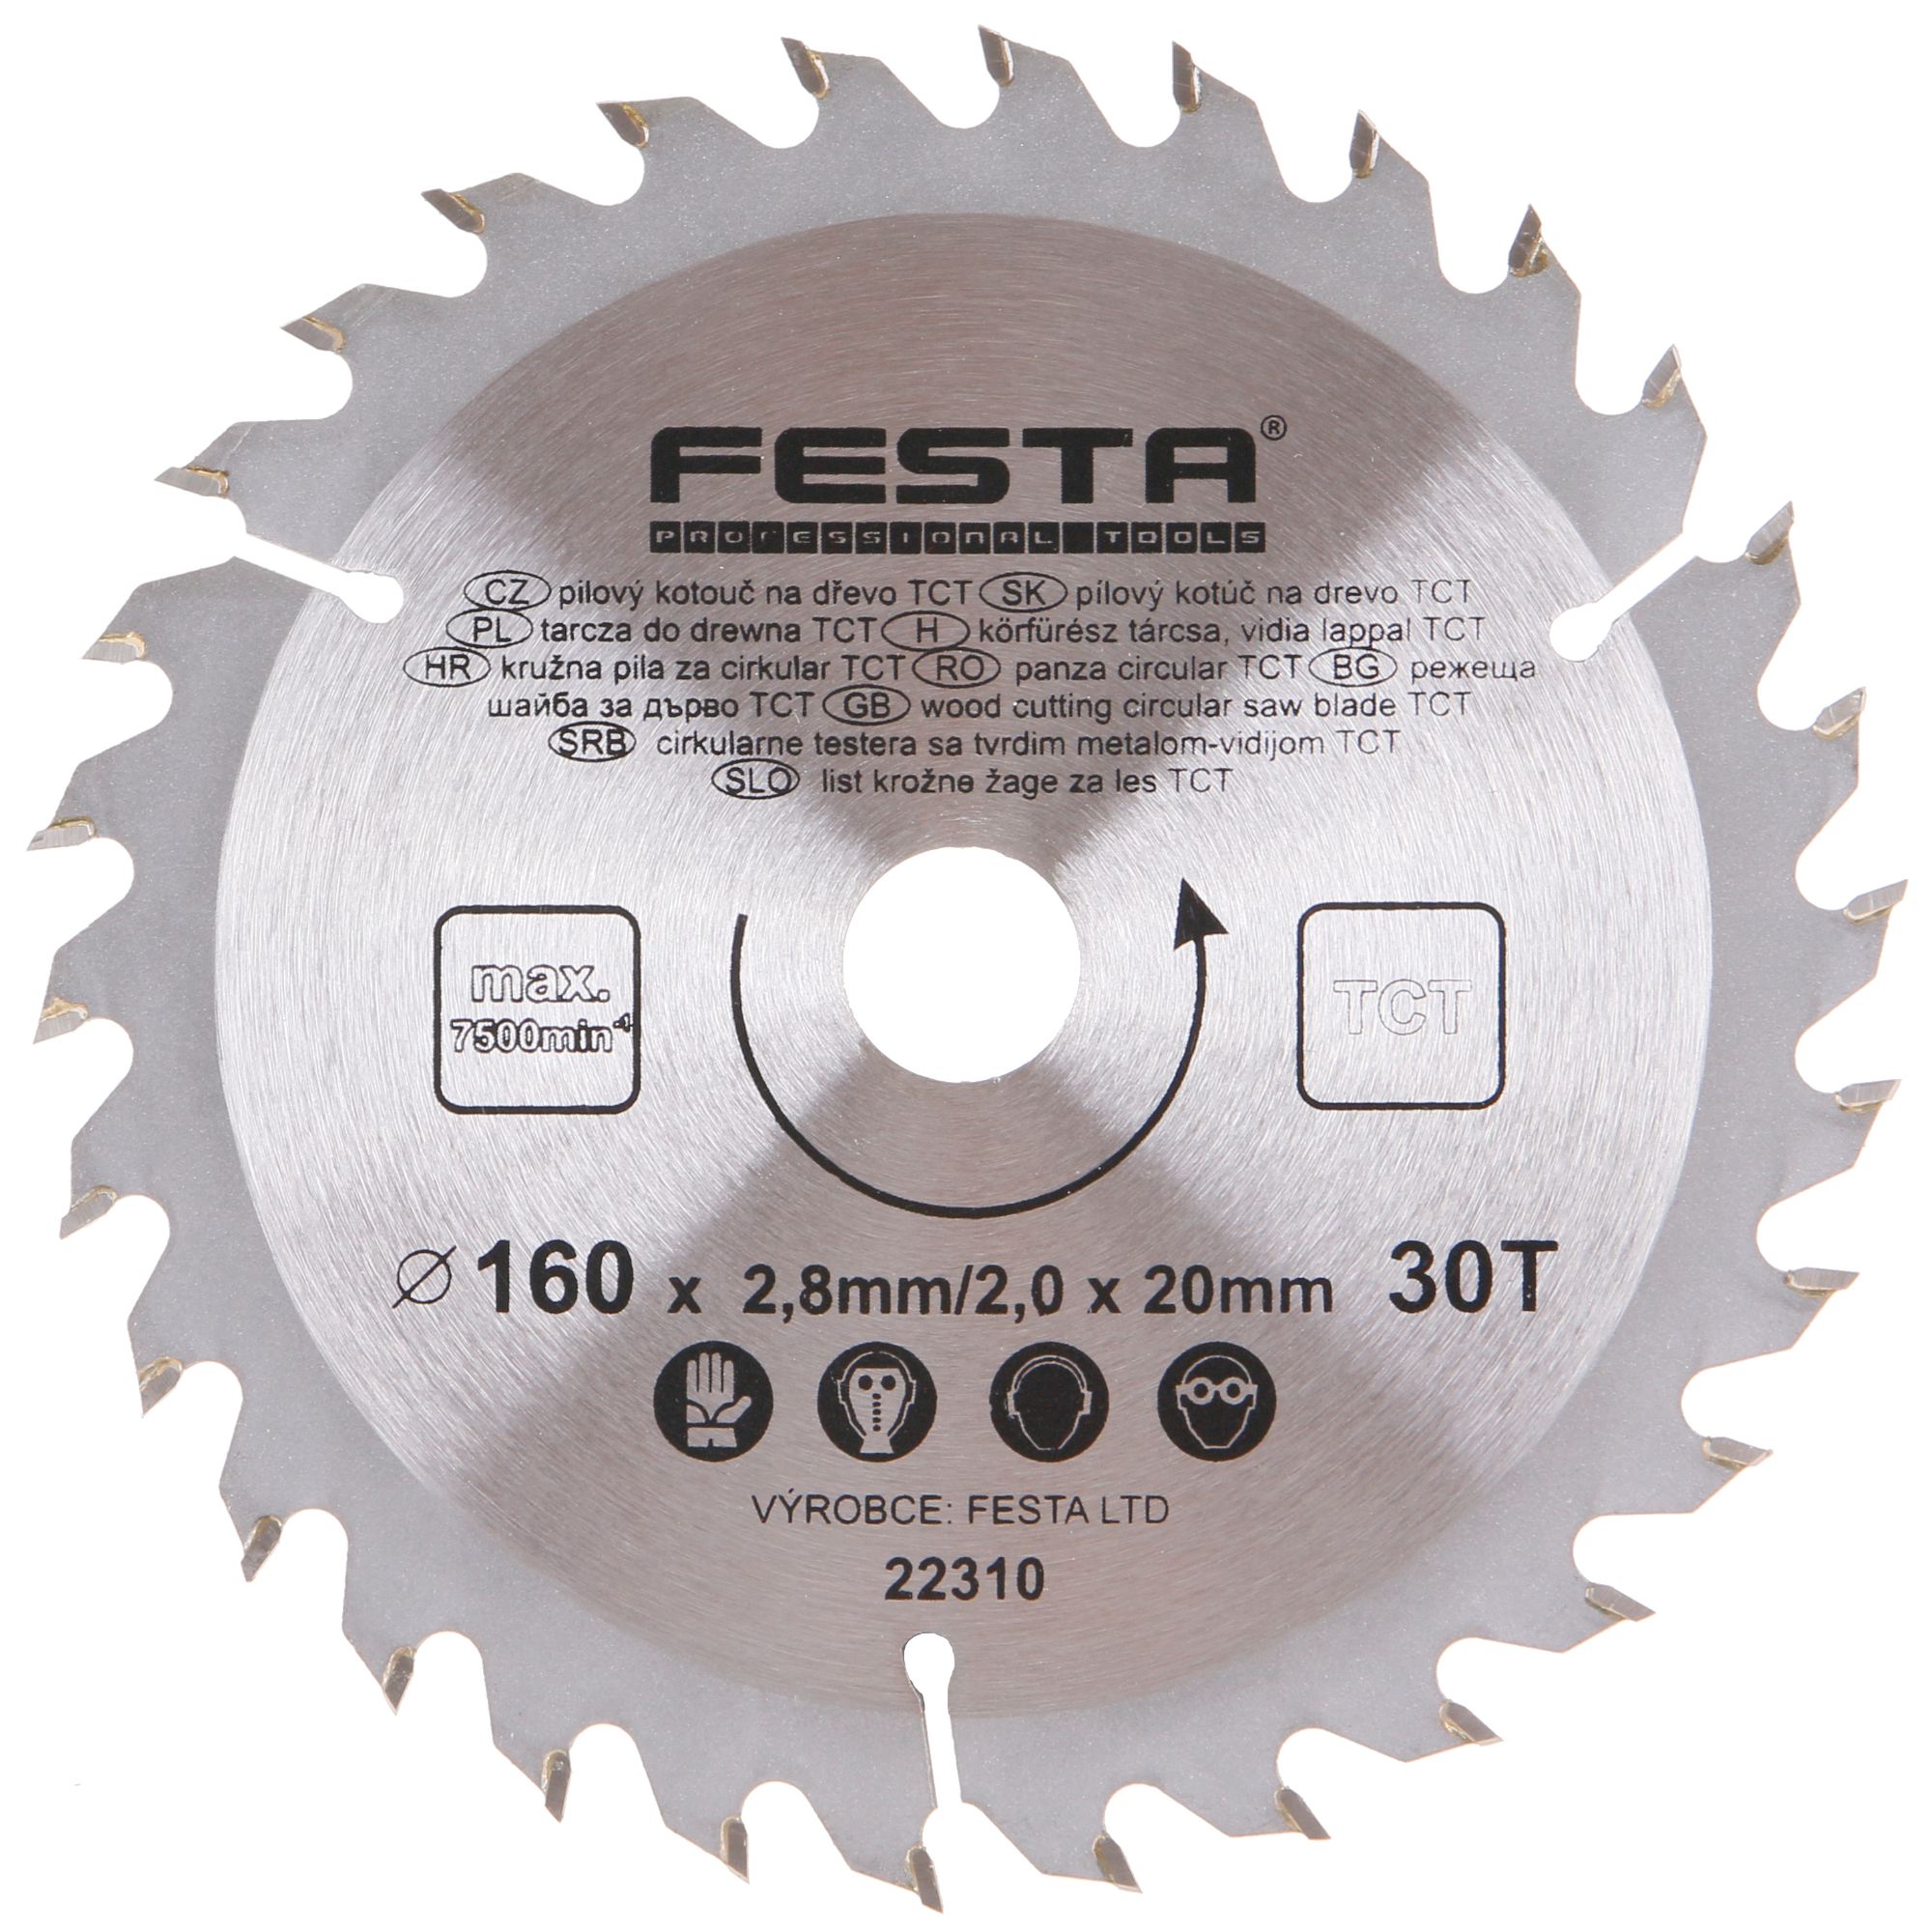 FESTA 22310 Kotouč pilový, na dřevo, 160mm, 30 zubů, 20/16mm, 2,8mm, TCT